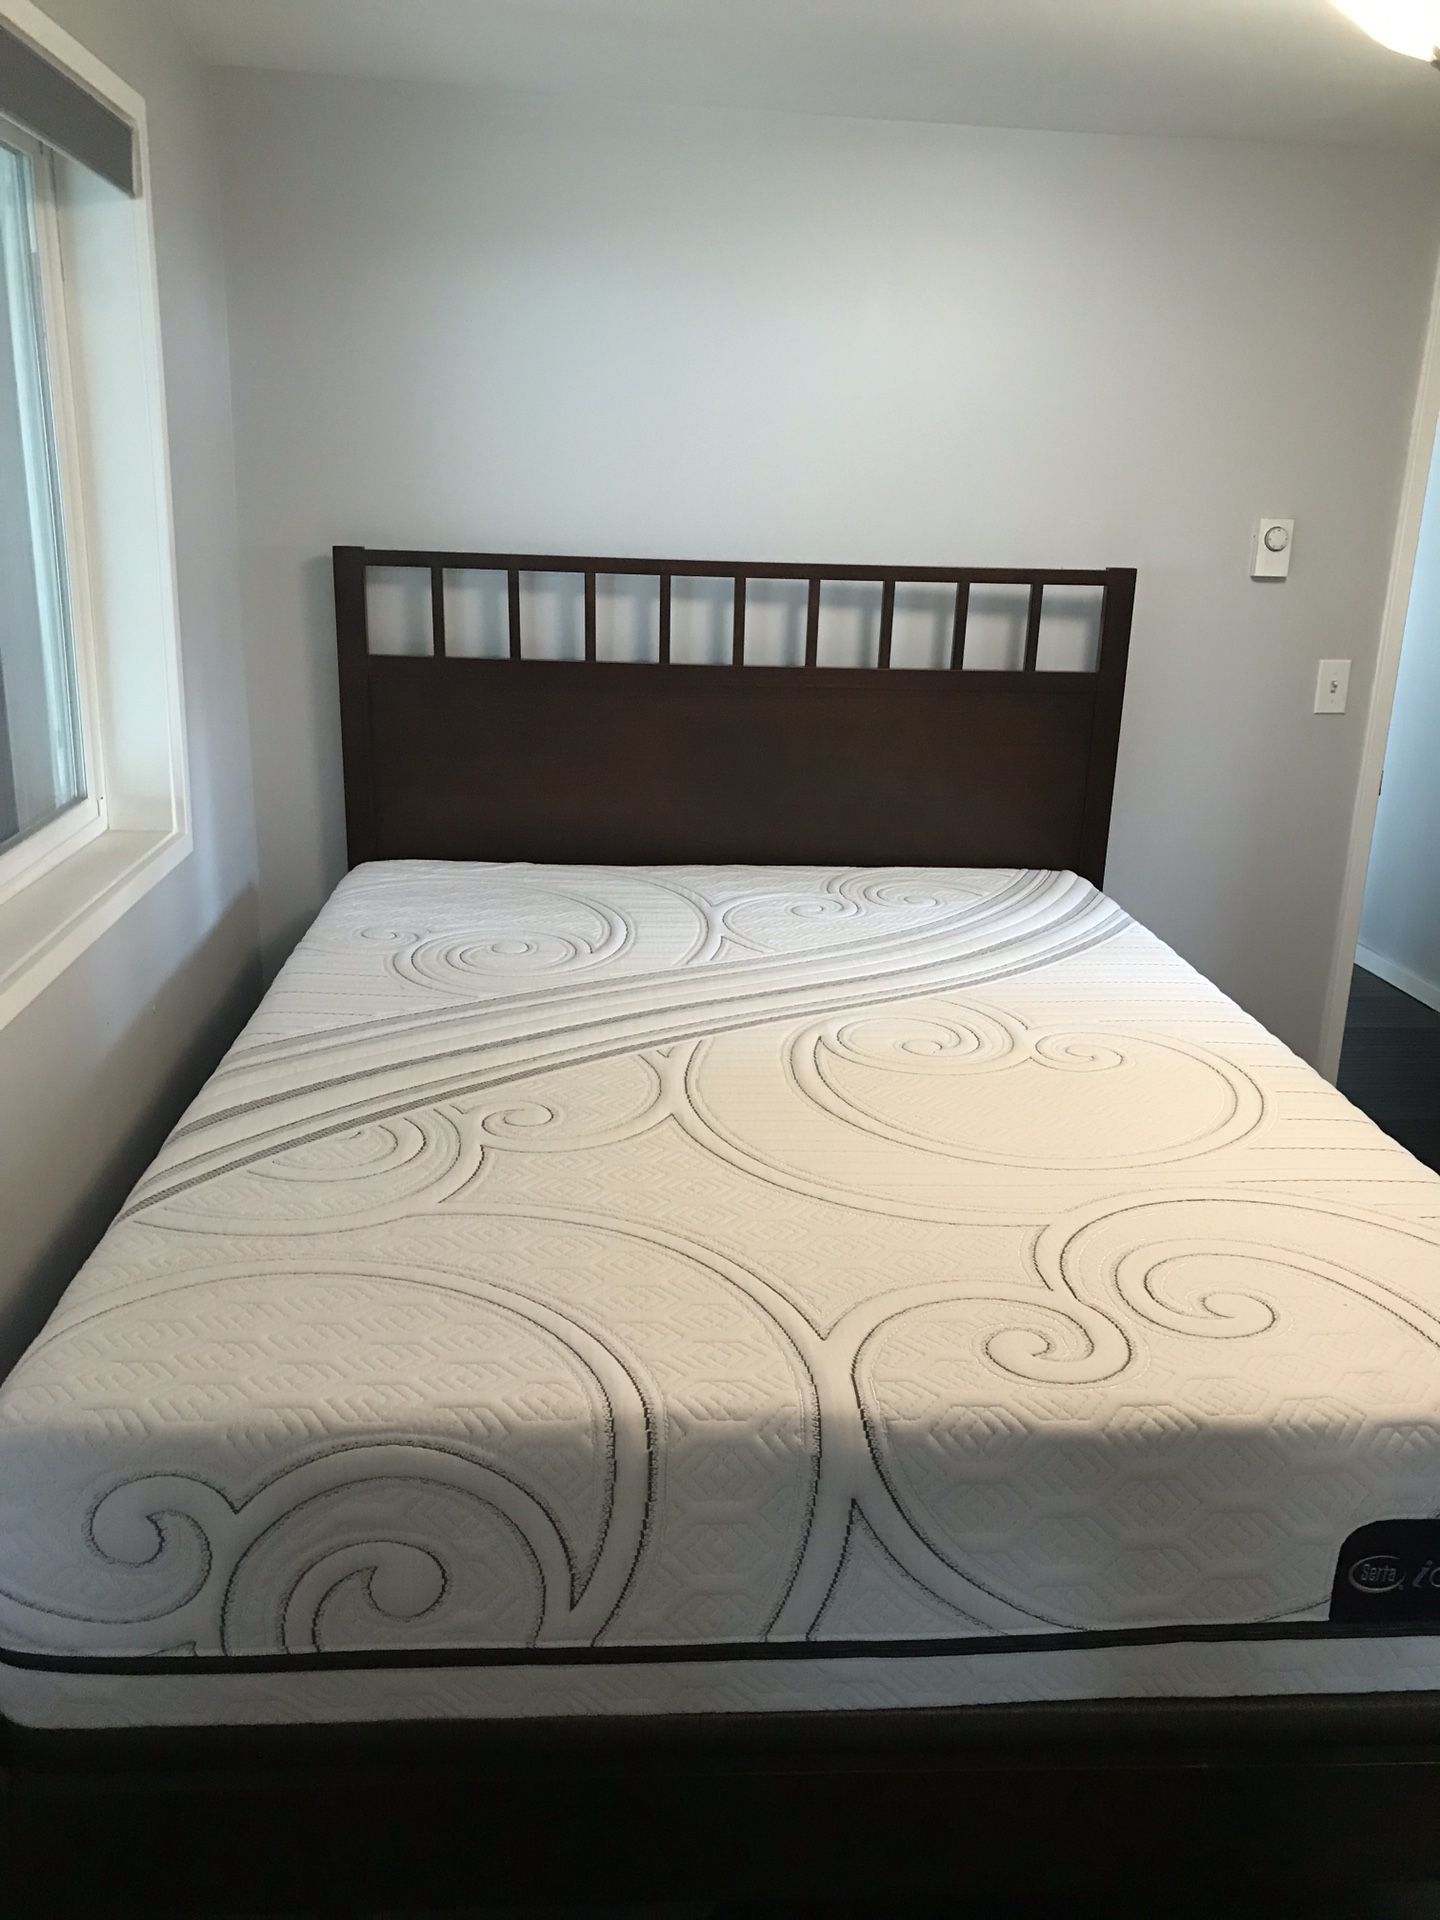 Serta Queen mattress and bedframe set